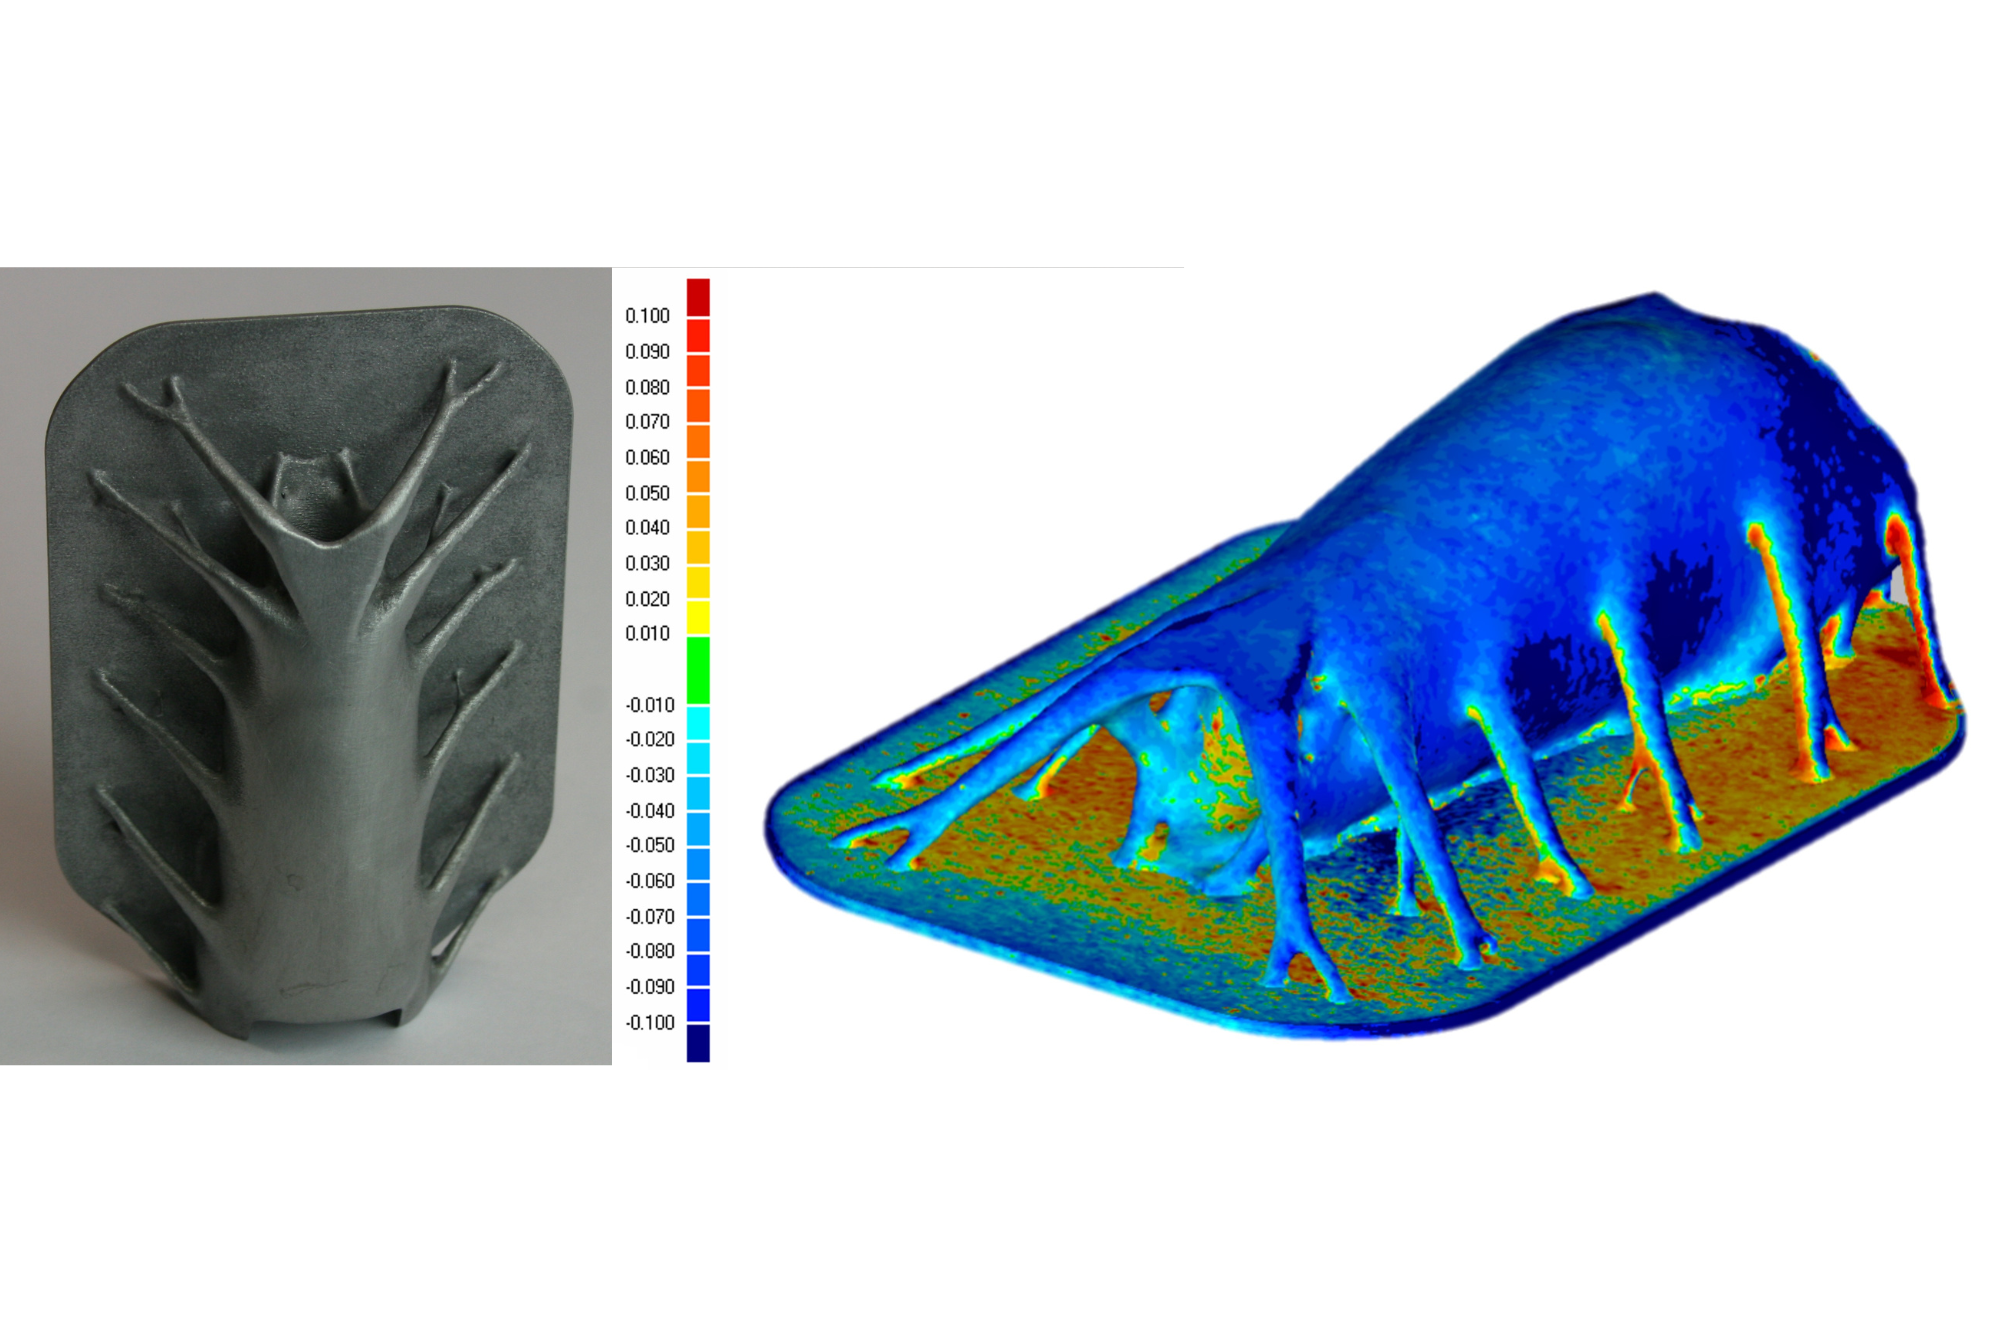 Soll-Ist-Vergleich eines 3D-gedruckten Scan-Spiegels mit Topologie optimierter „Käfer-Struktur“